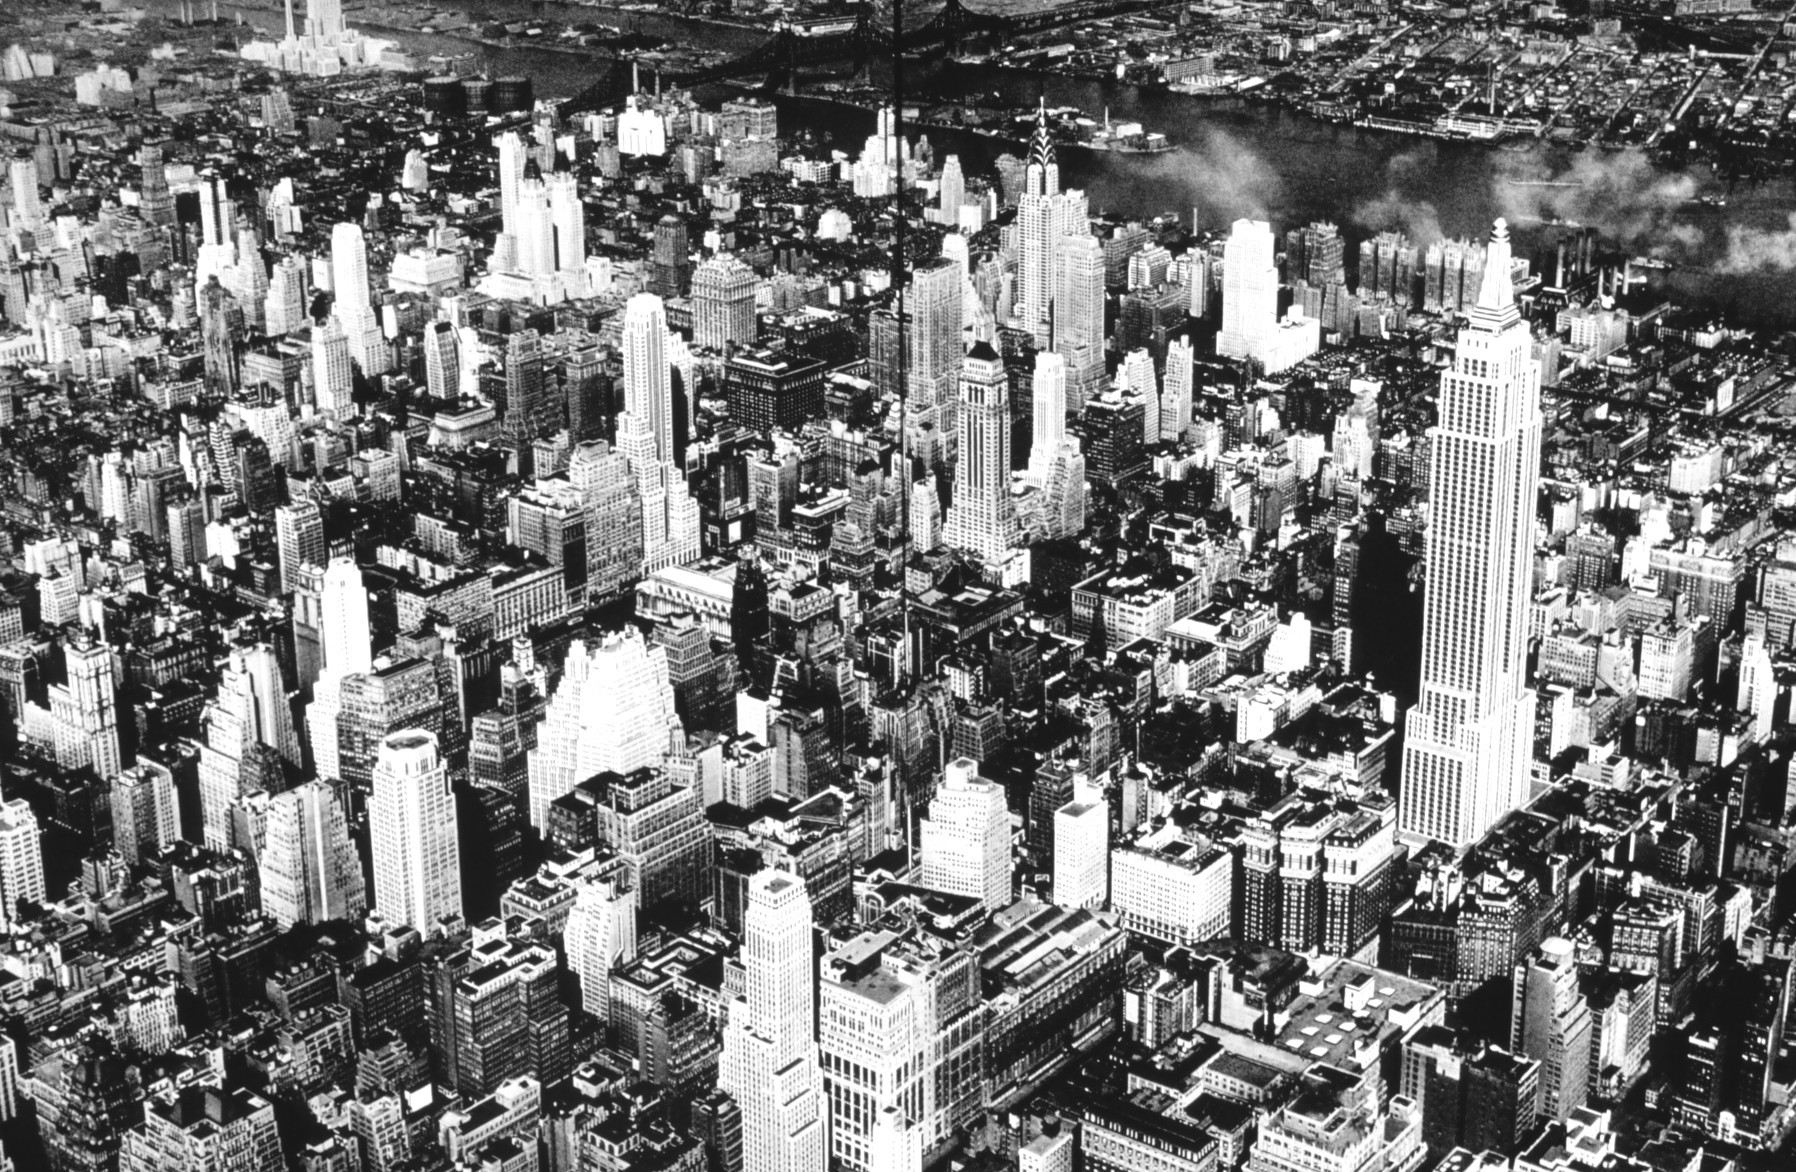 Vue de Manhattan vers 1932. L'Empire State Building se trouve à l'avant droit de l'image.